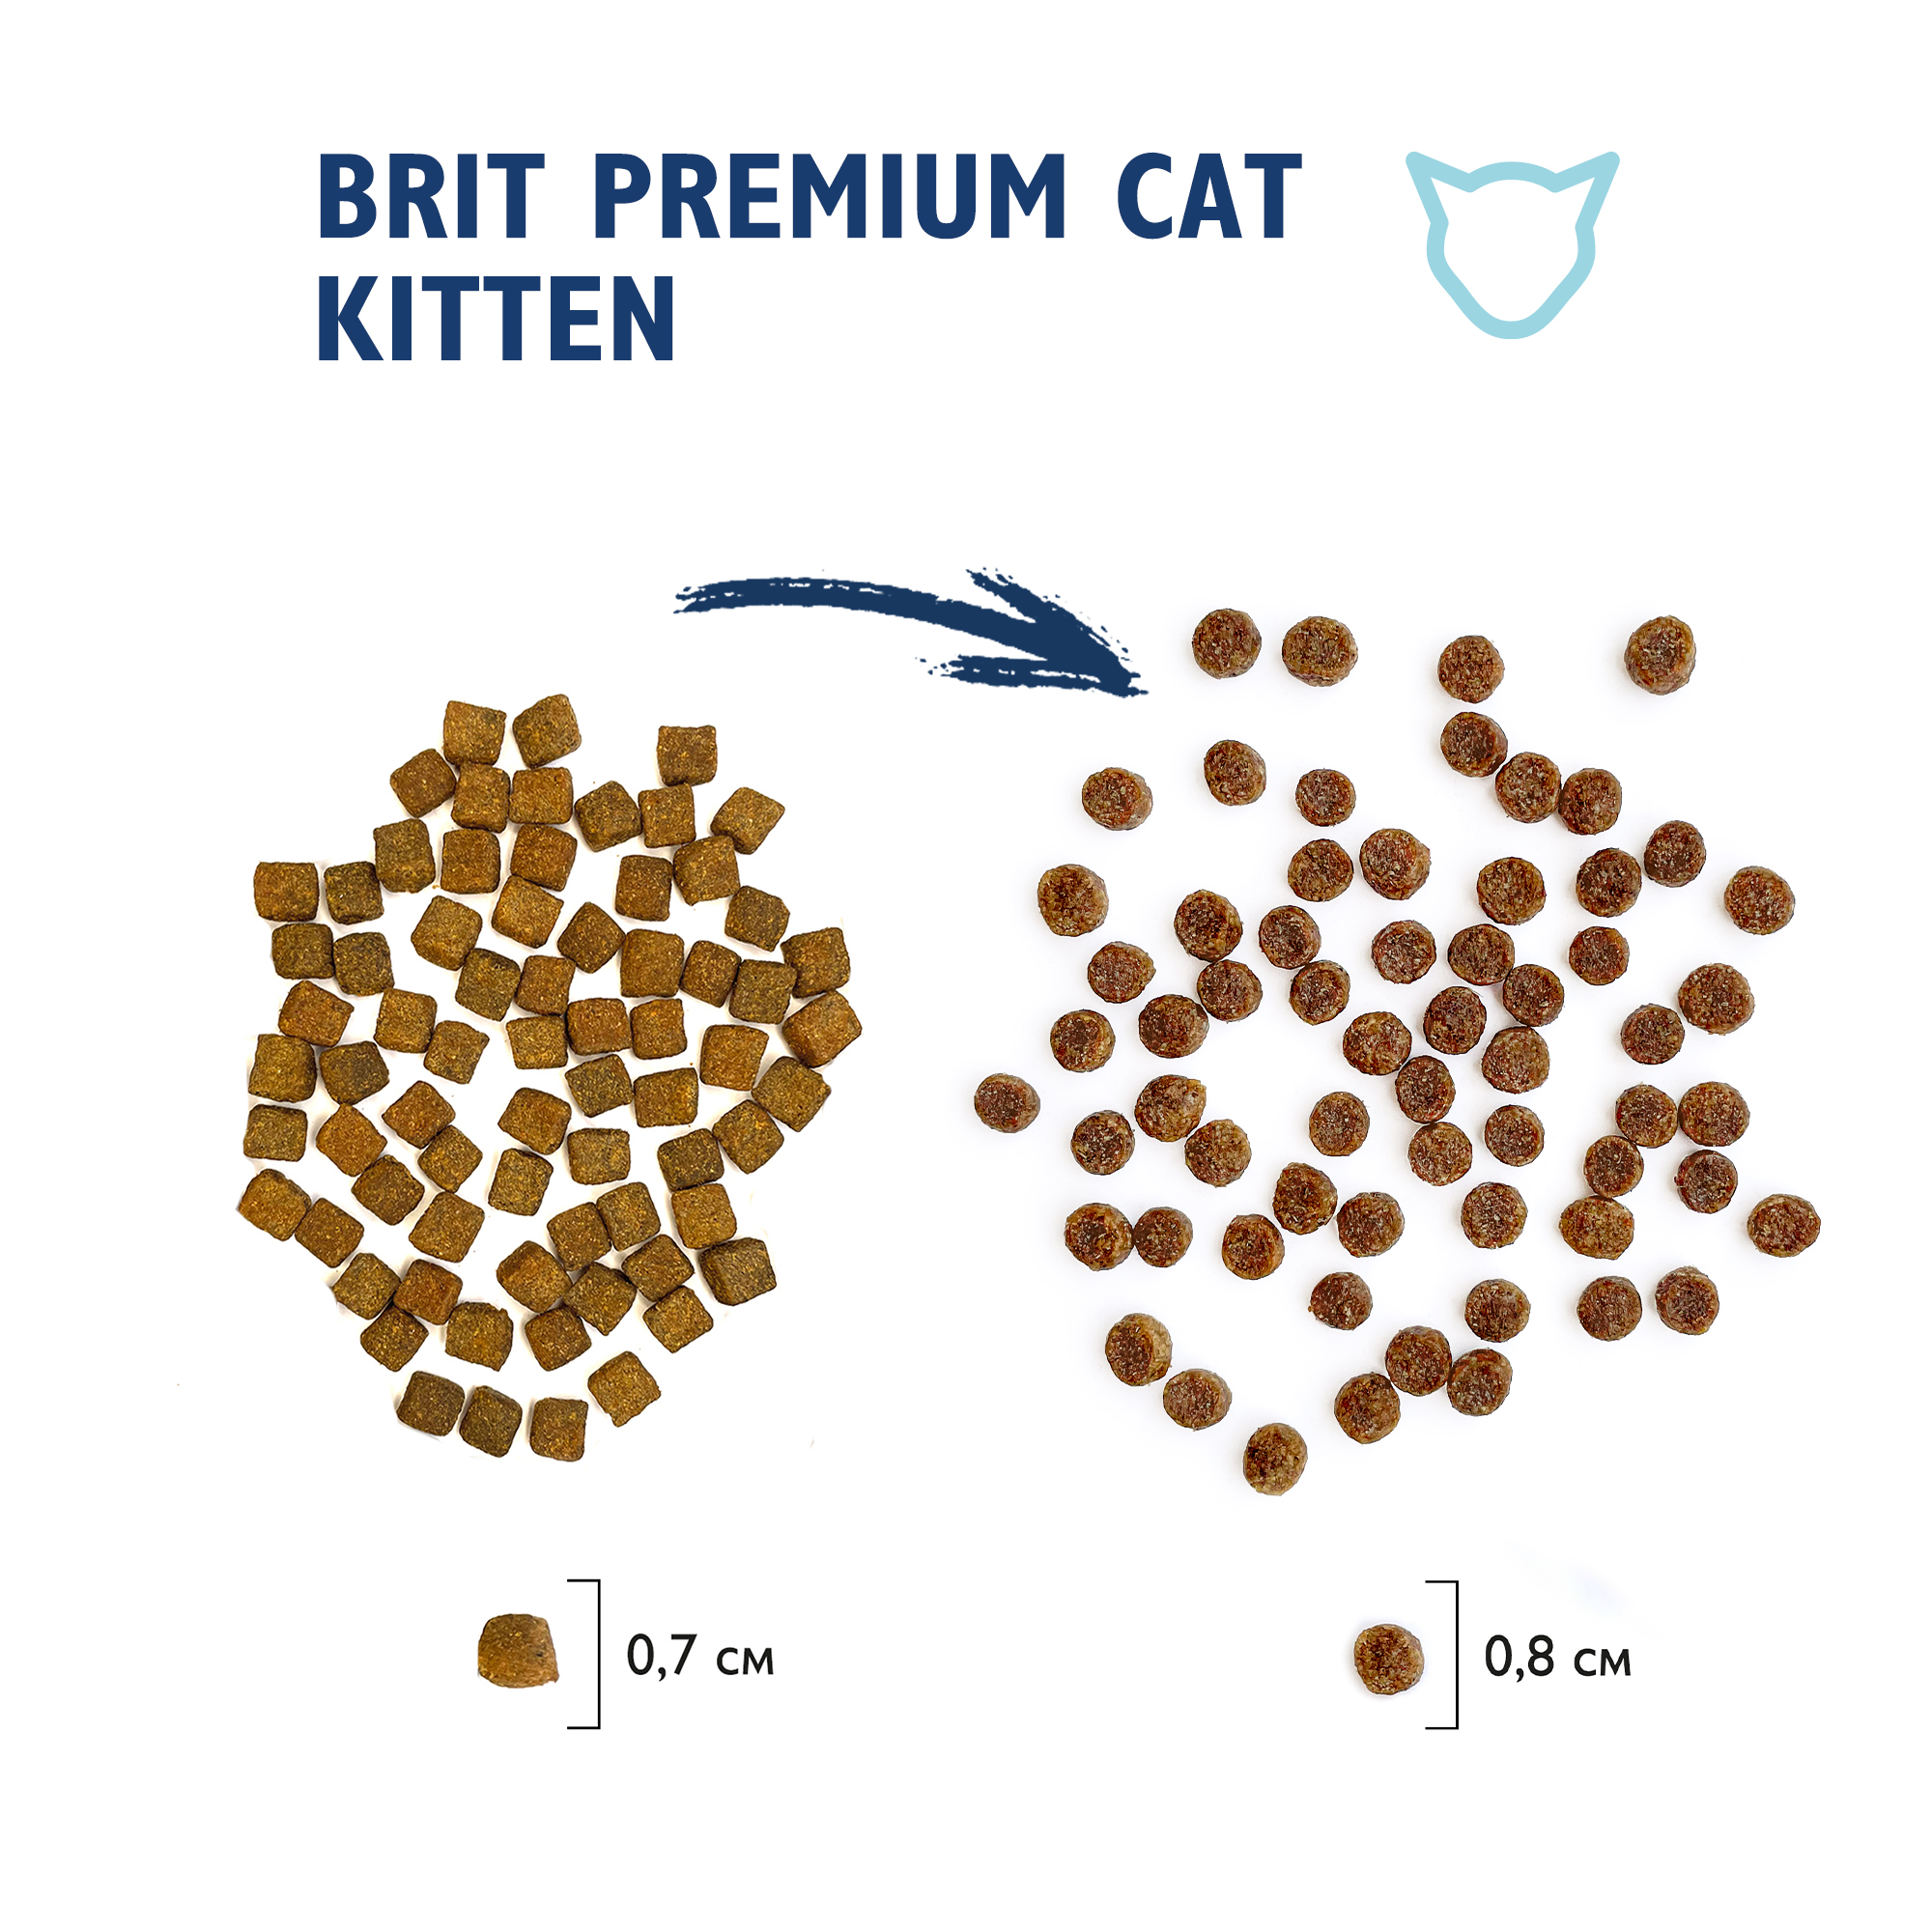 Brit Premium Cat Kitten новый размер и форма гранул